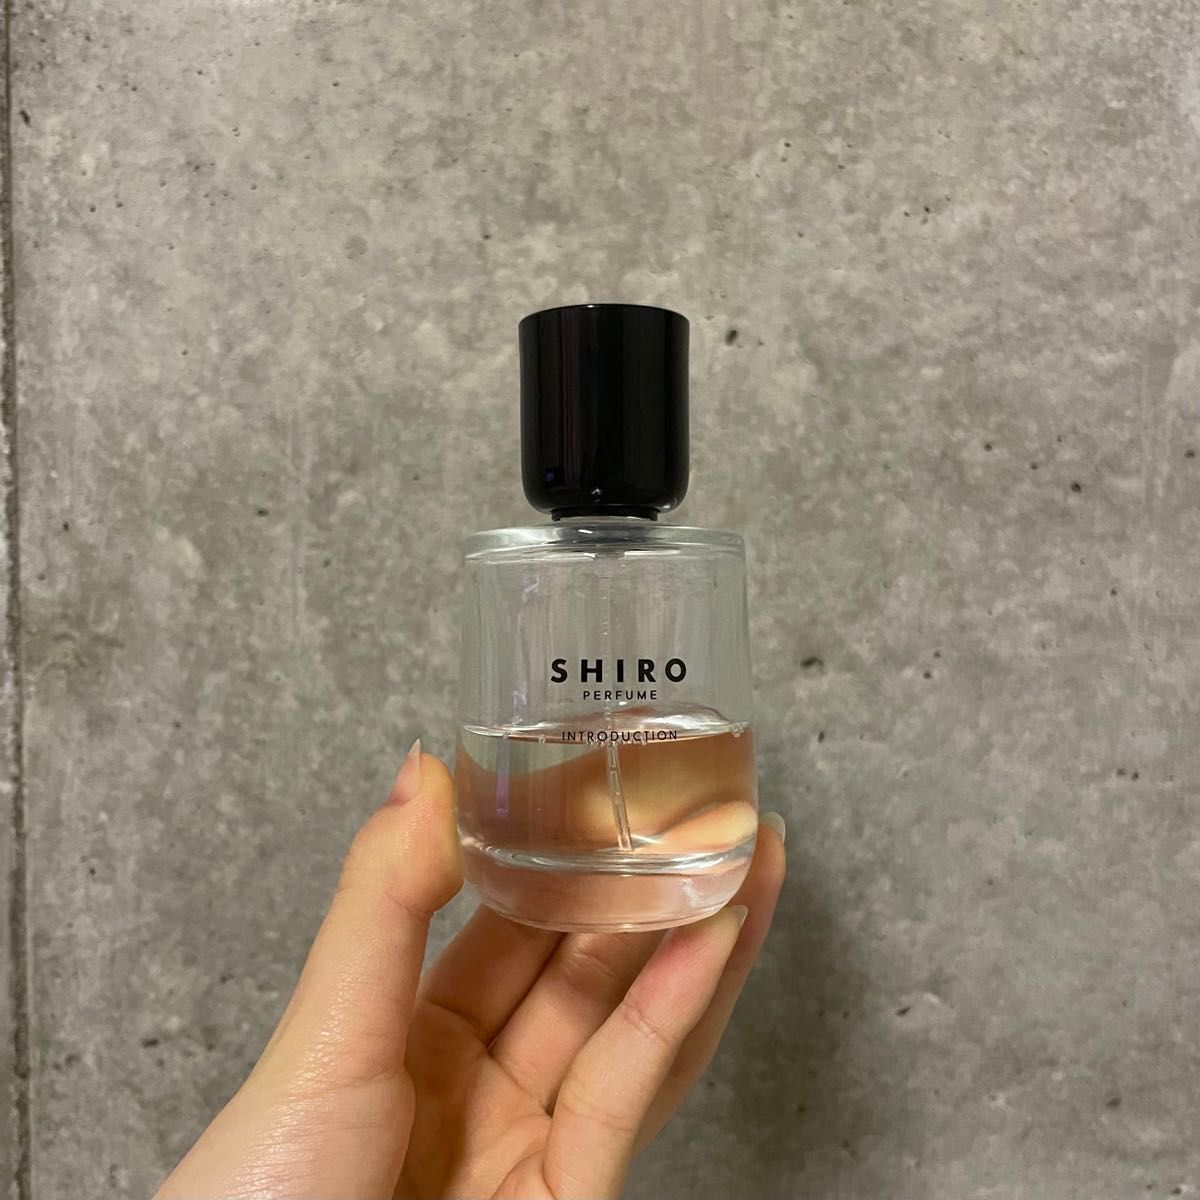 shiroの香水です。去年の冬に買って半分ほど使用しています。#SHIRO #INTRODUCTION